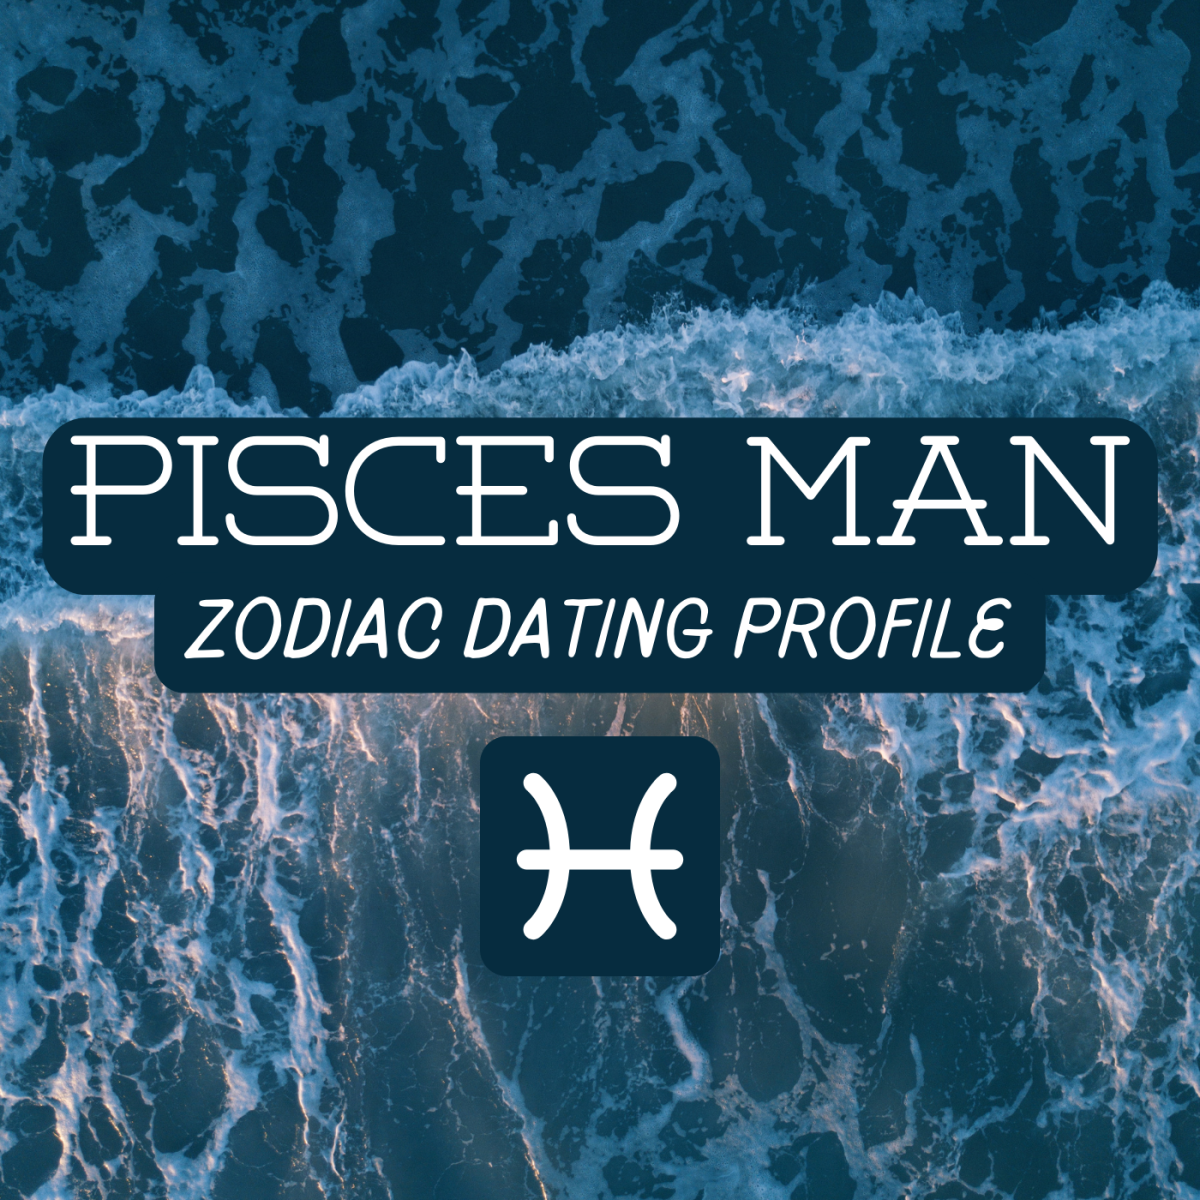 Pisces dates